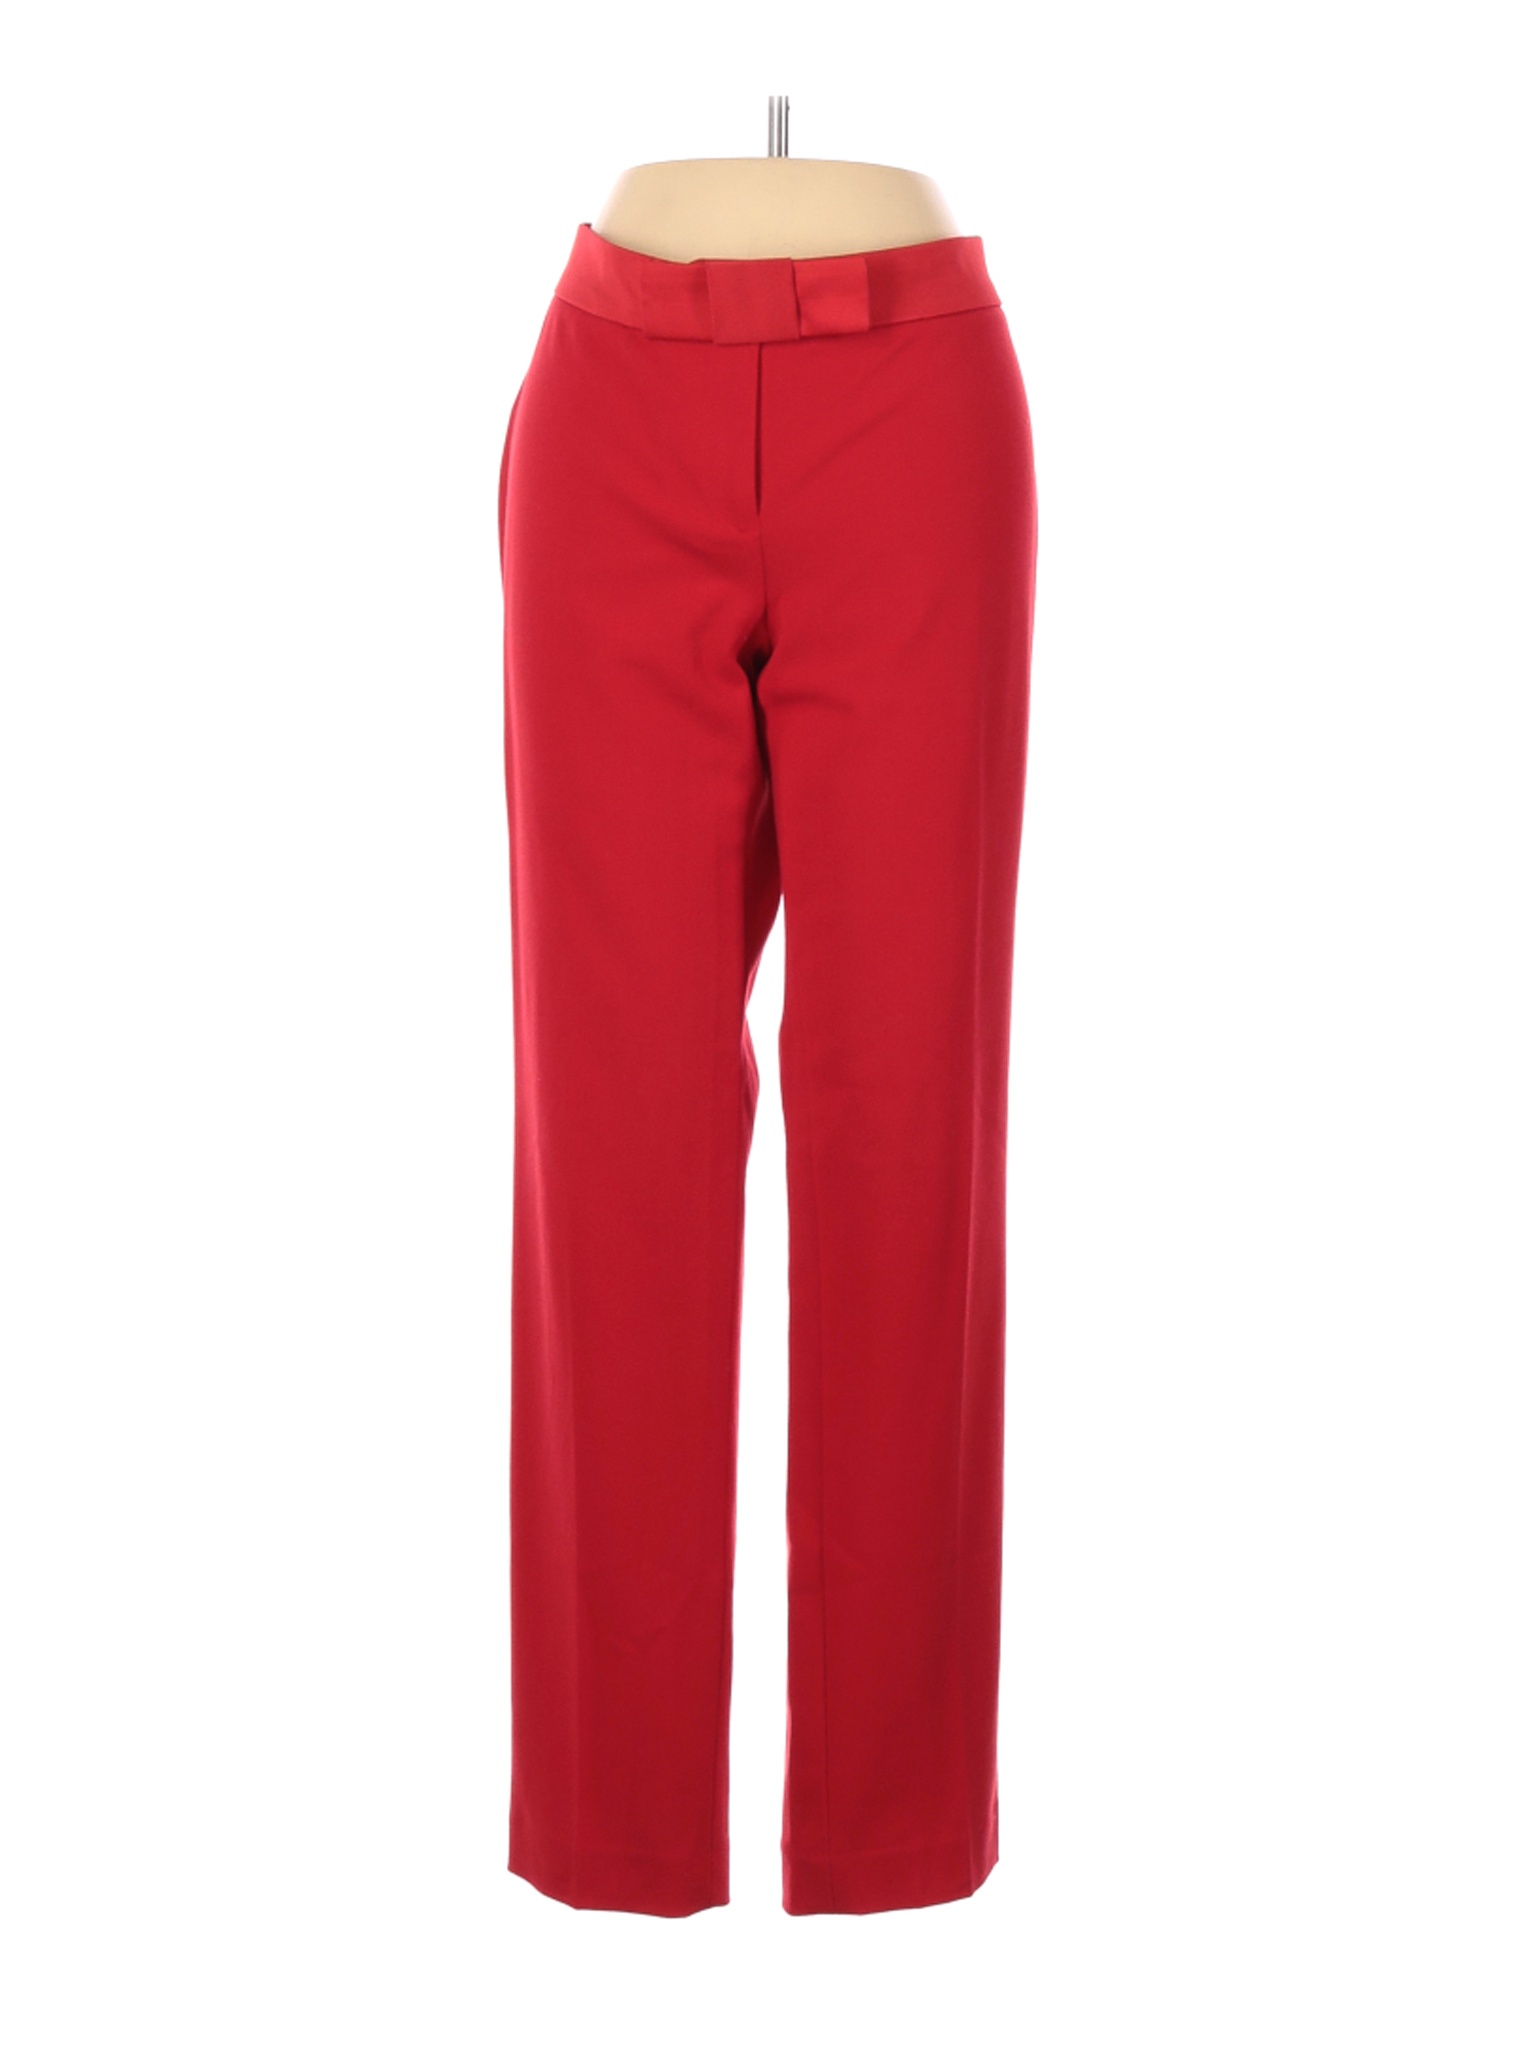 Ann Taylor Women Red Dress Pants 4 | eBay